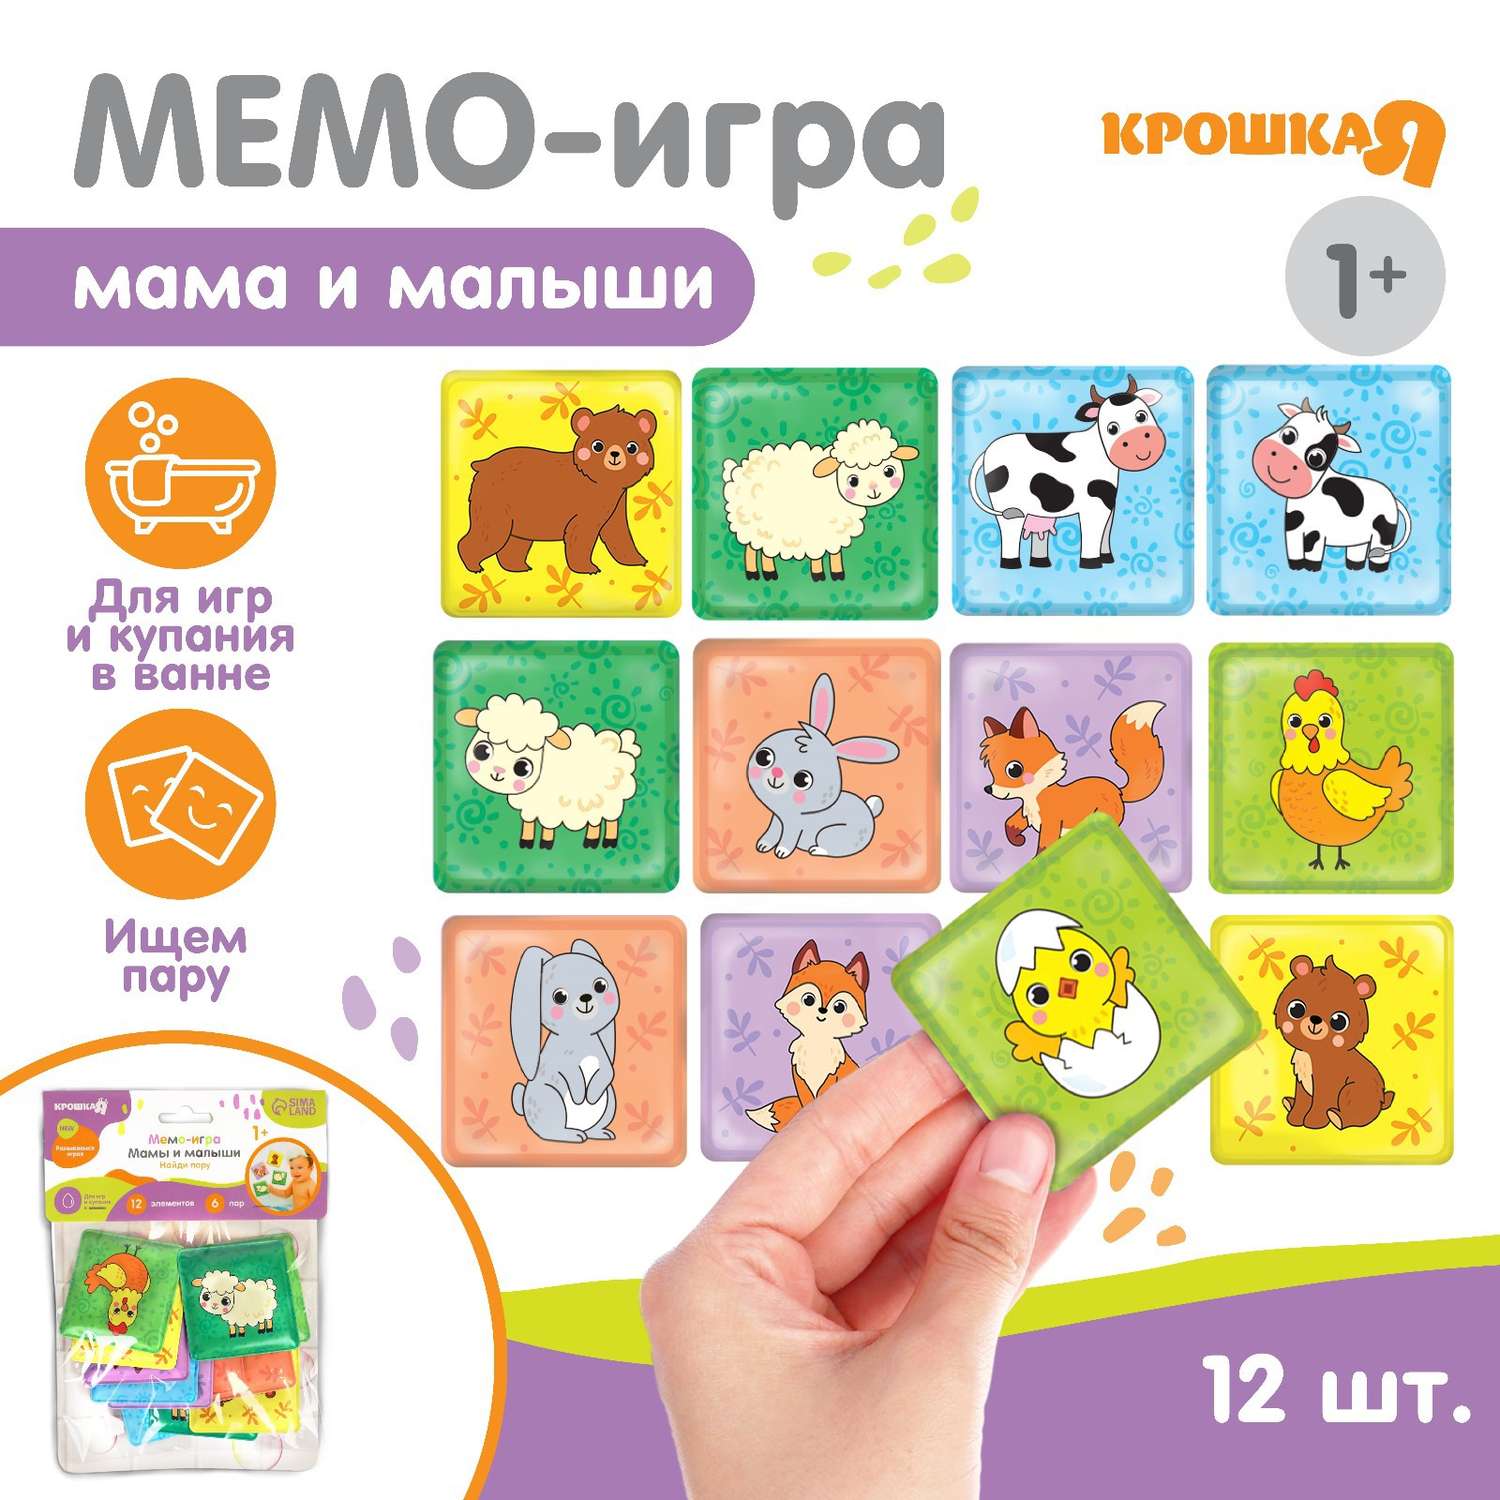 Мемо-игра: Крошка Я развивающие наклейки для игры в ванной «Мамы и малыши» - фото 1